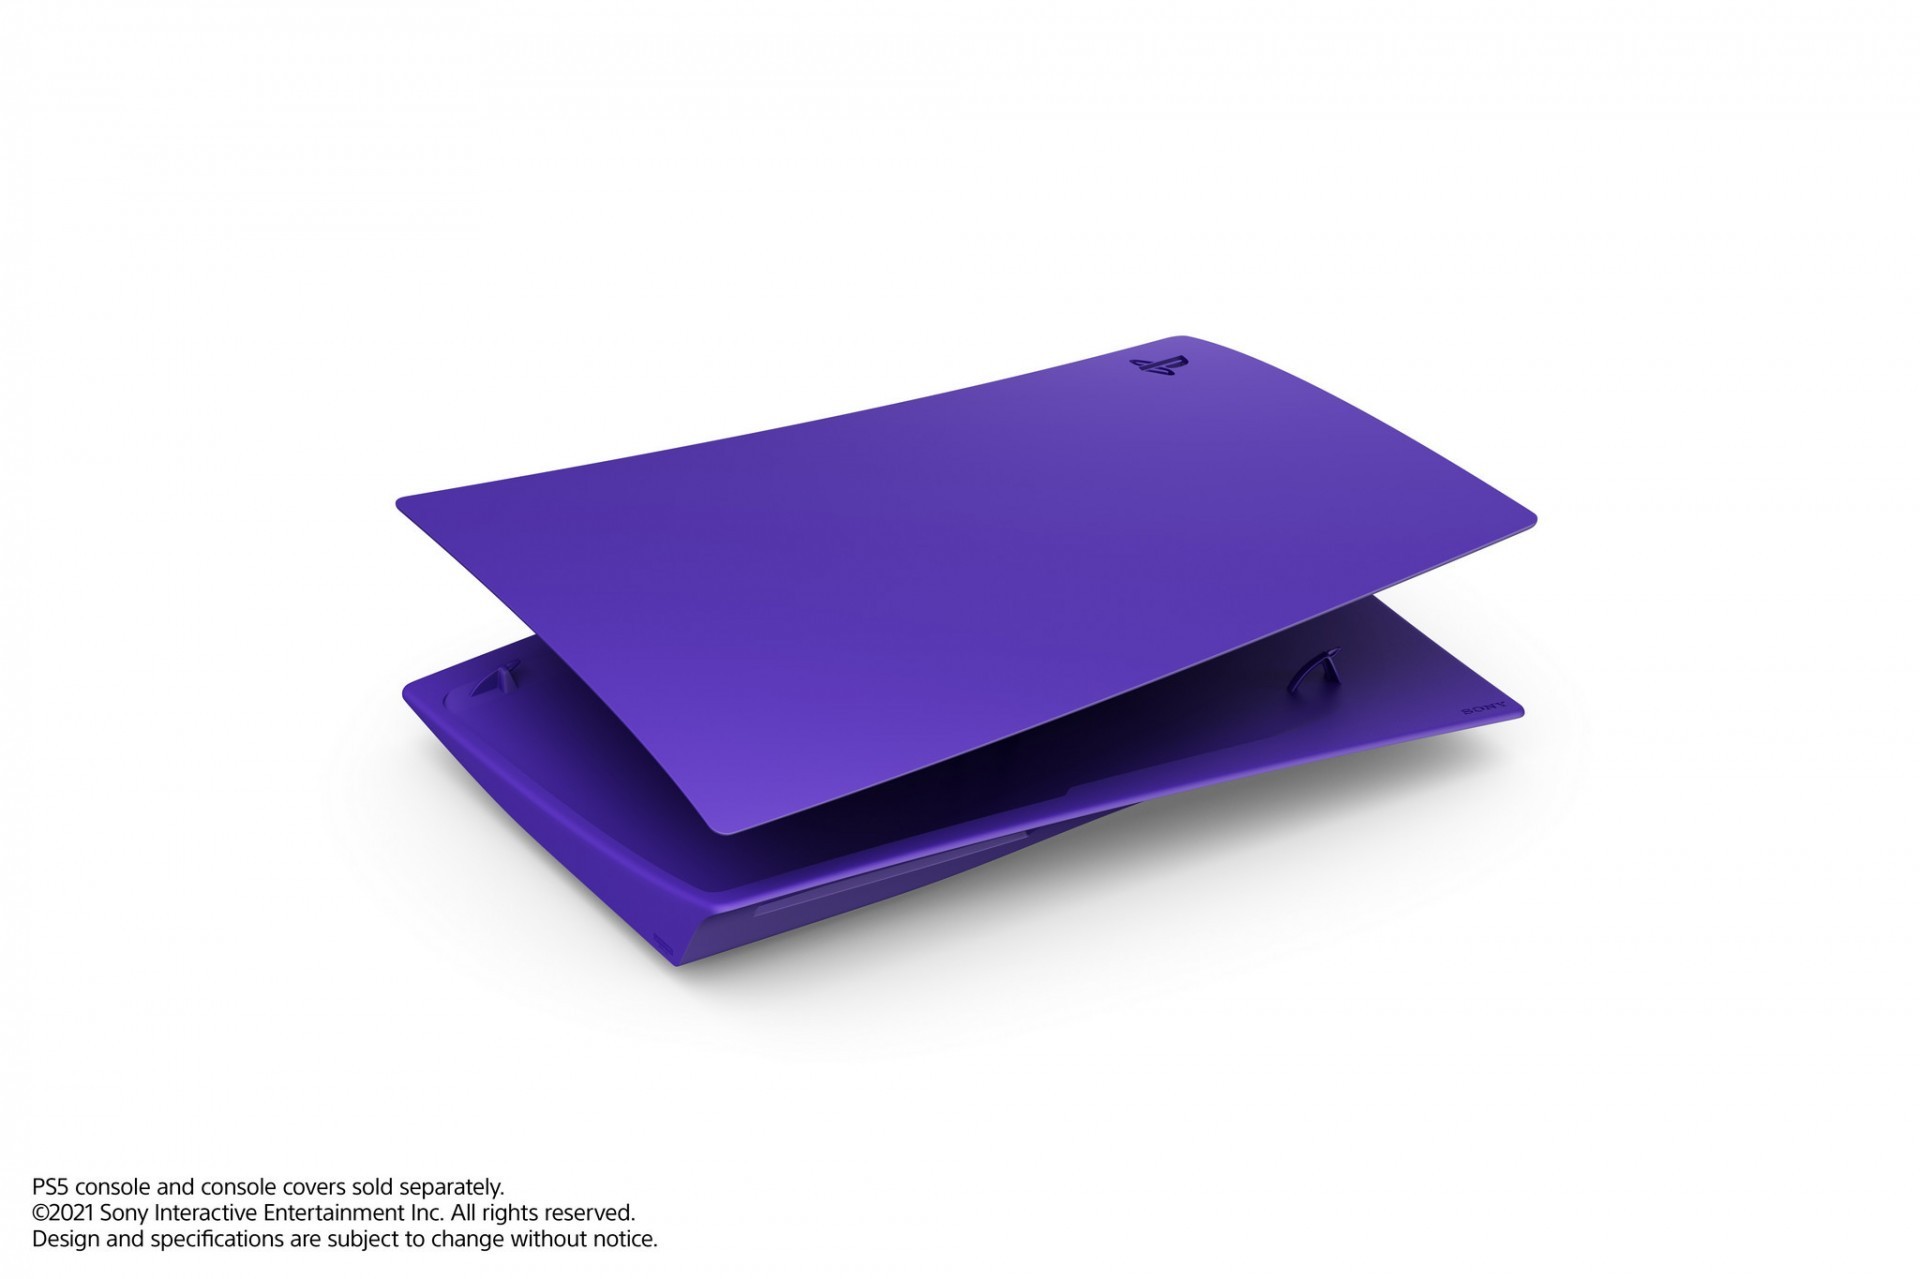 全新銀河系色彩配色 PS5 主機護蓋「星光藍」「銀河紫」「星幻粉」6 月在台上市